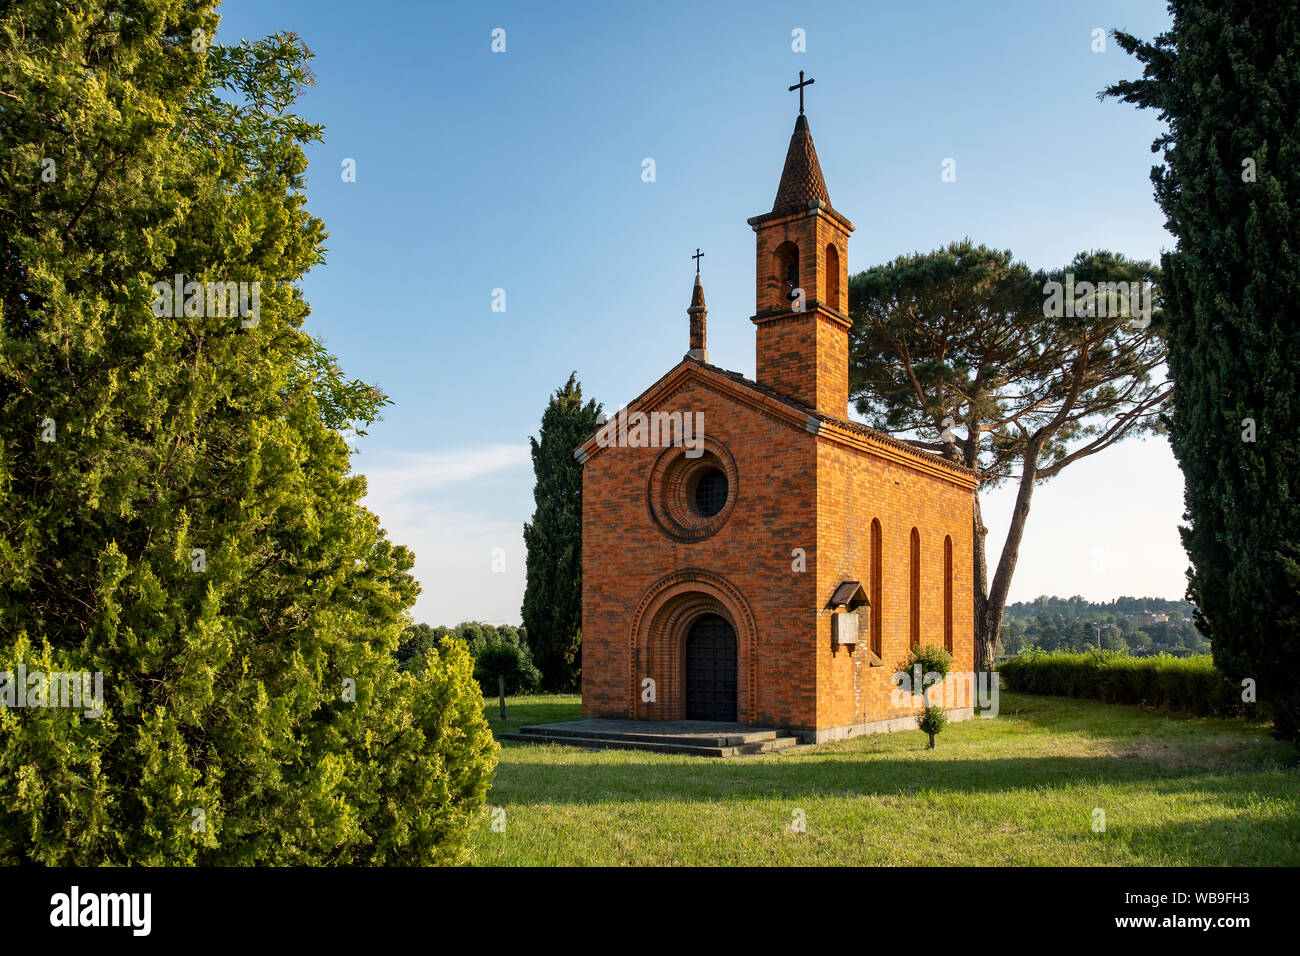 Die rote Kirche von Pomelasca in der lombardischen Landschaft, Inverigo, Provinz Como, Brianza, Italien, Europa Stockfoto